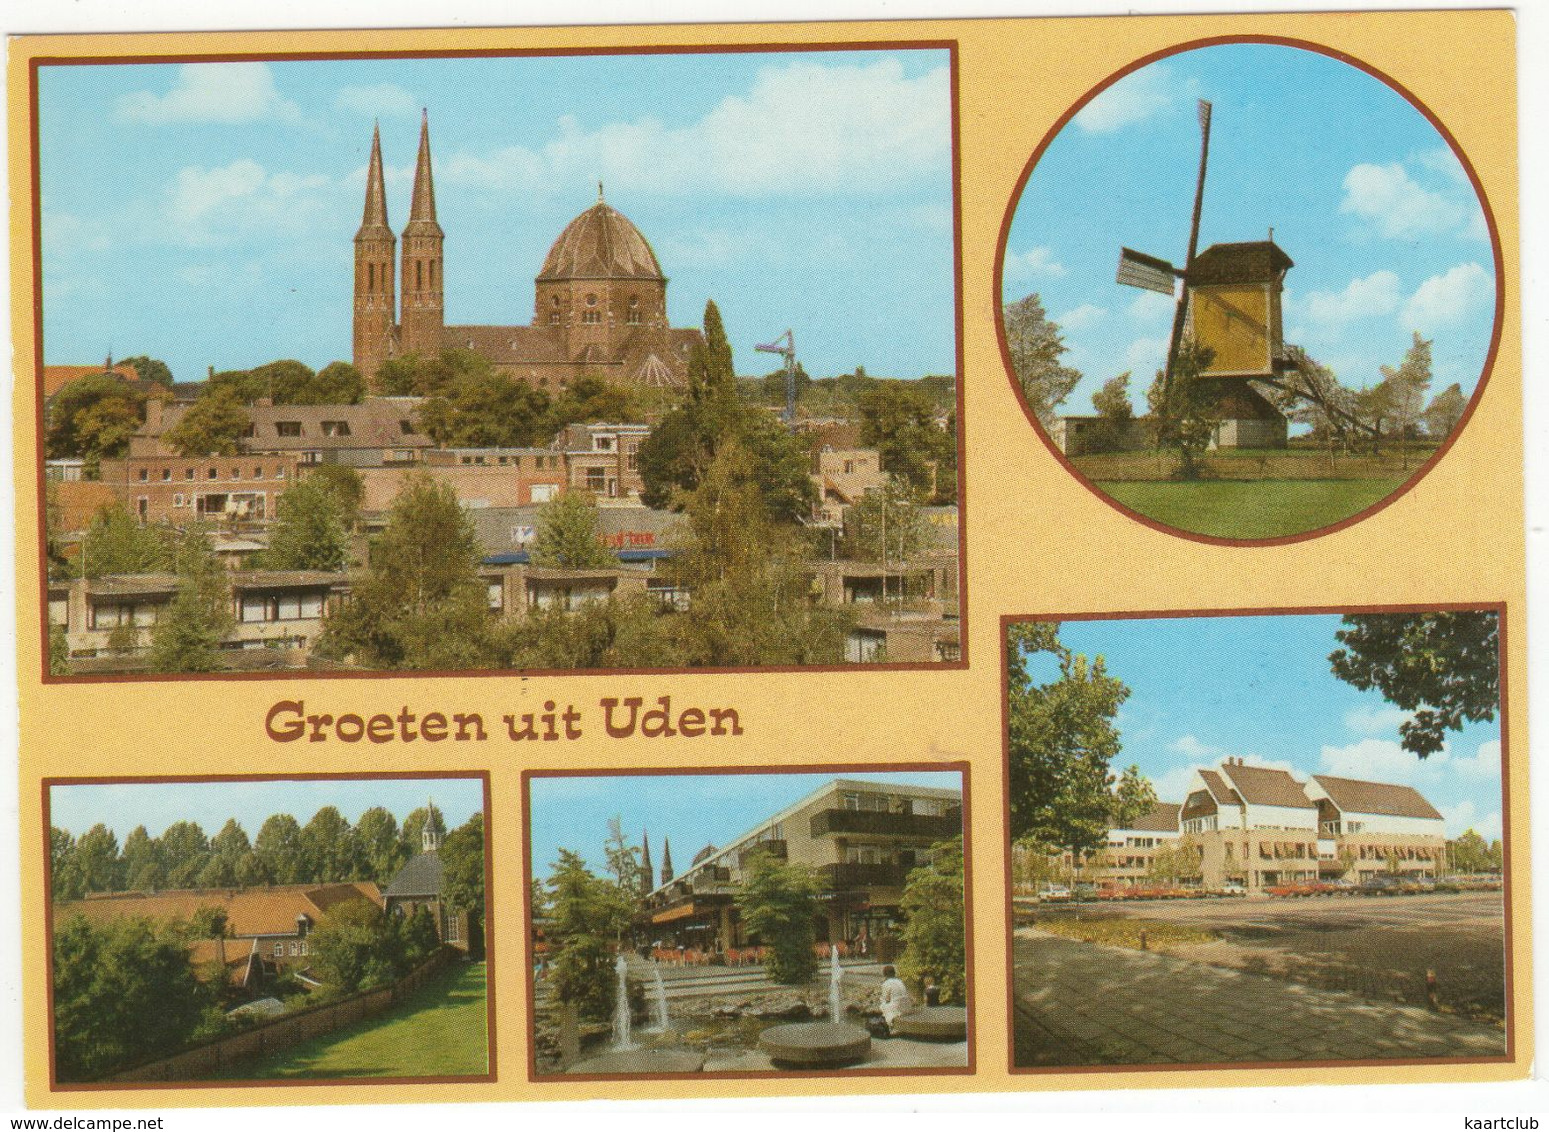 Uden : St. Petrus-kerk, Standaardmolen 'Molen Van Jetten', Birgittinessen Klooster, Galery, Gem. Huis - Uden